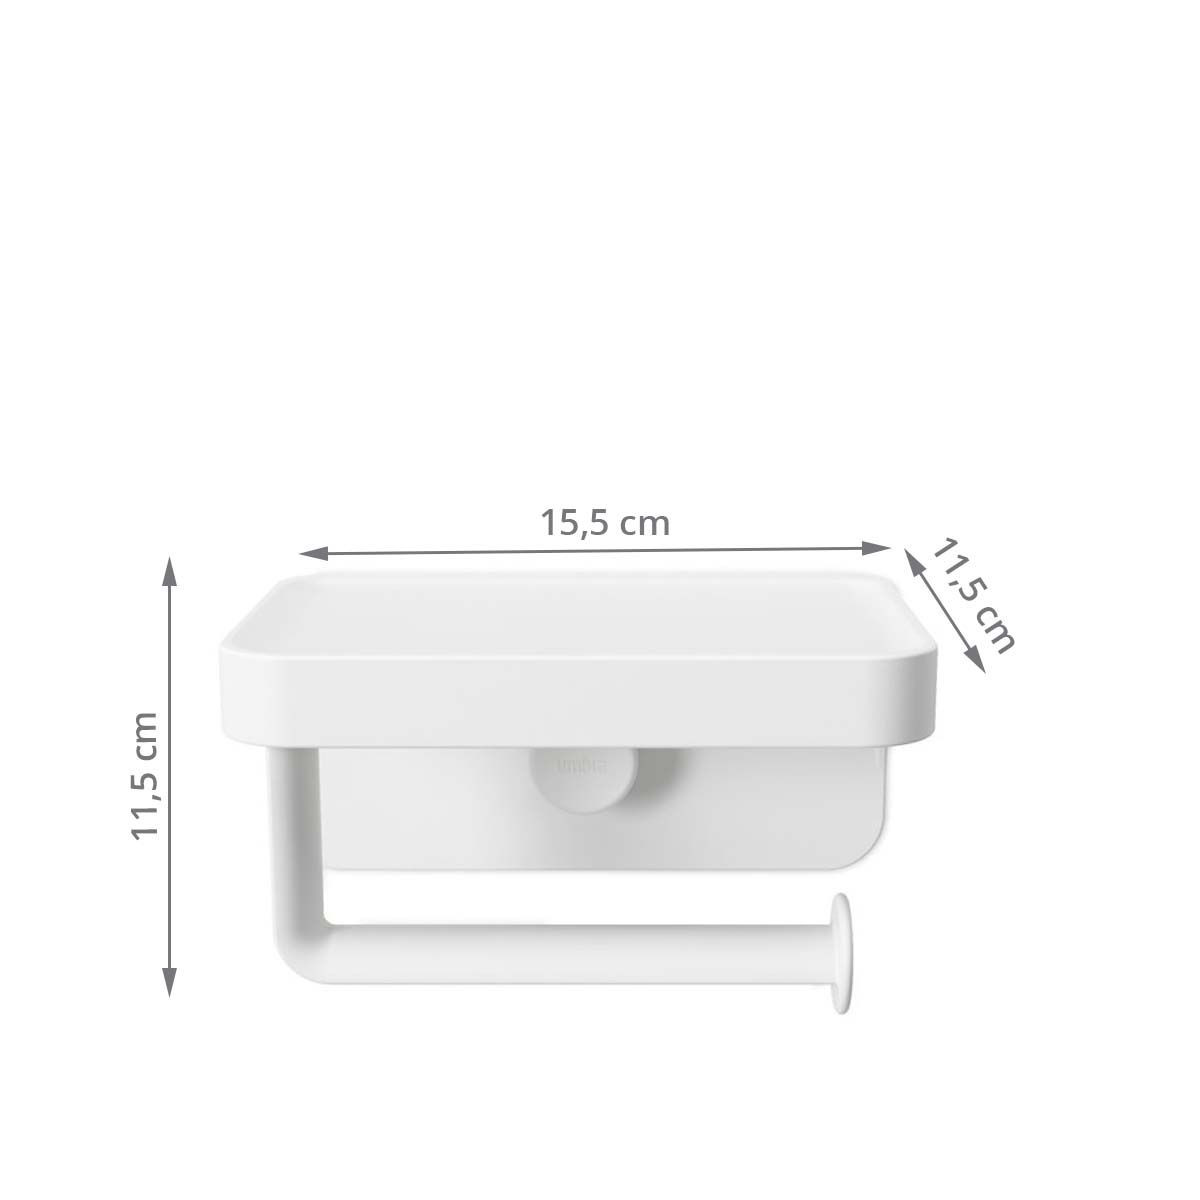 Porte papier hygiénique à ventouse - Transparent - H 17,4 cm